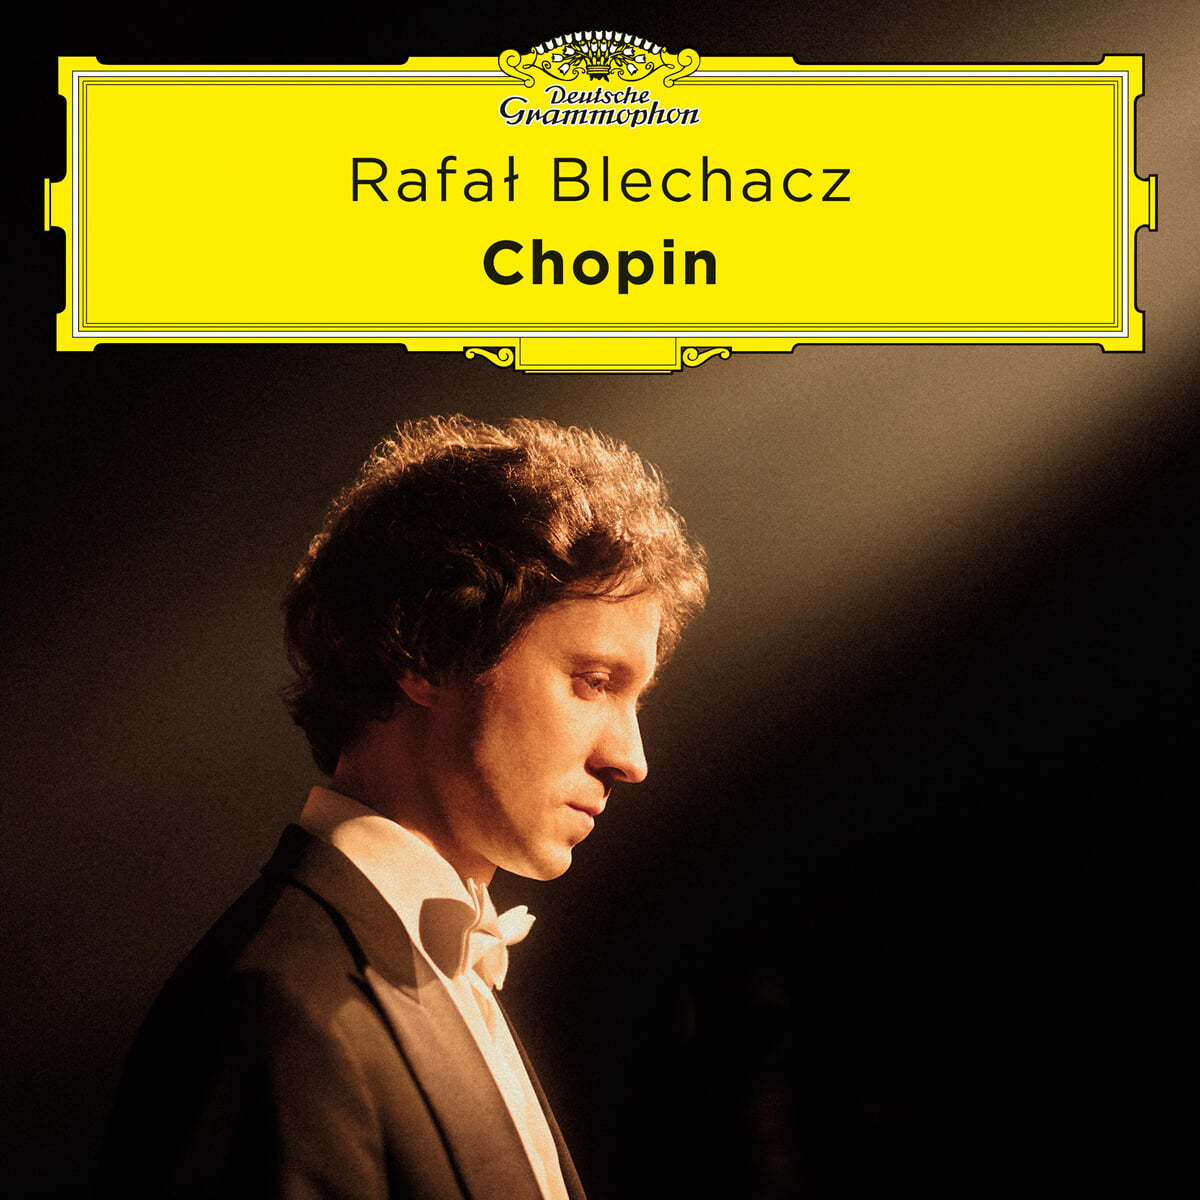 Rafal Blechacz 쇼팽: 피아노 소나타 2, 3번 - 라파우 블레하츠 (Chopin)